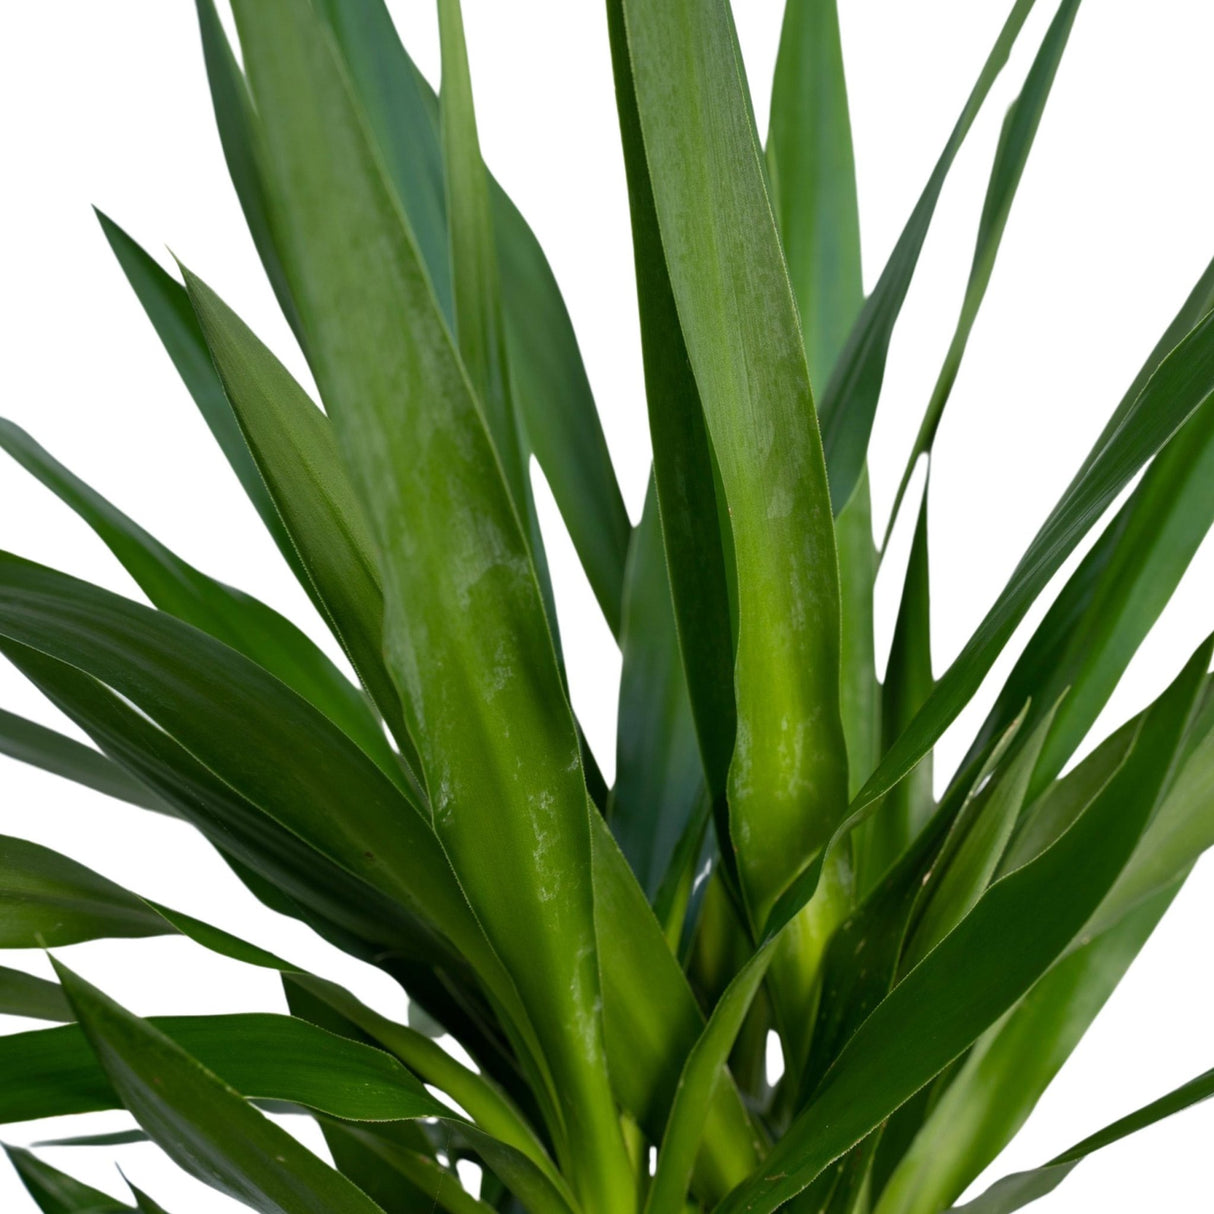 Livraison plante - Yucca XL - h100cm, Ø21cm - très grande plante d'intérieur